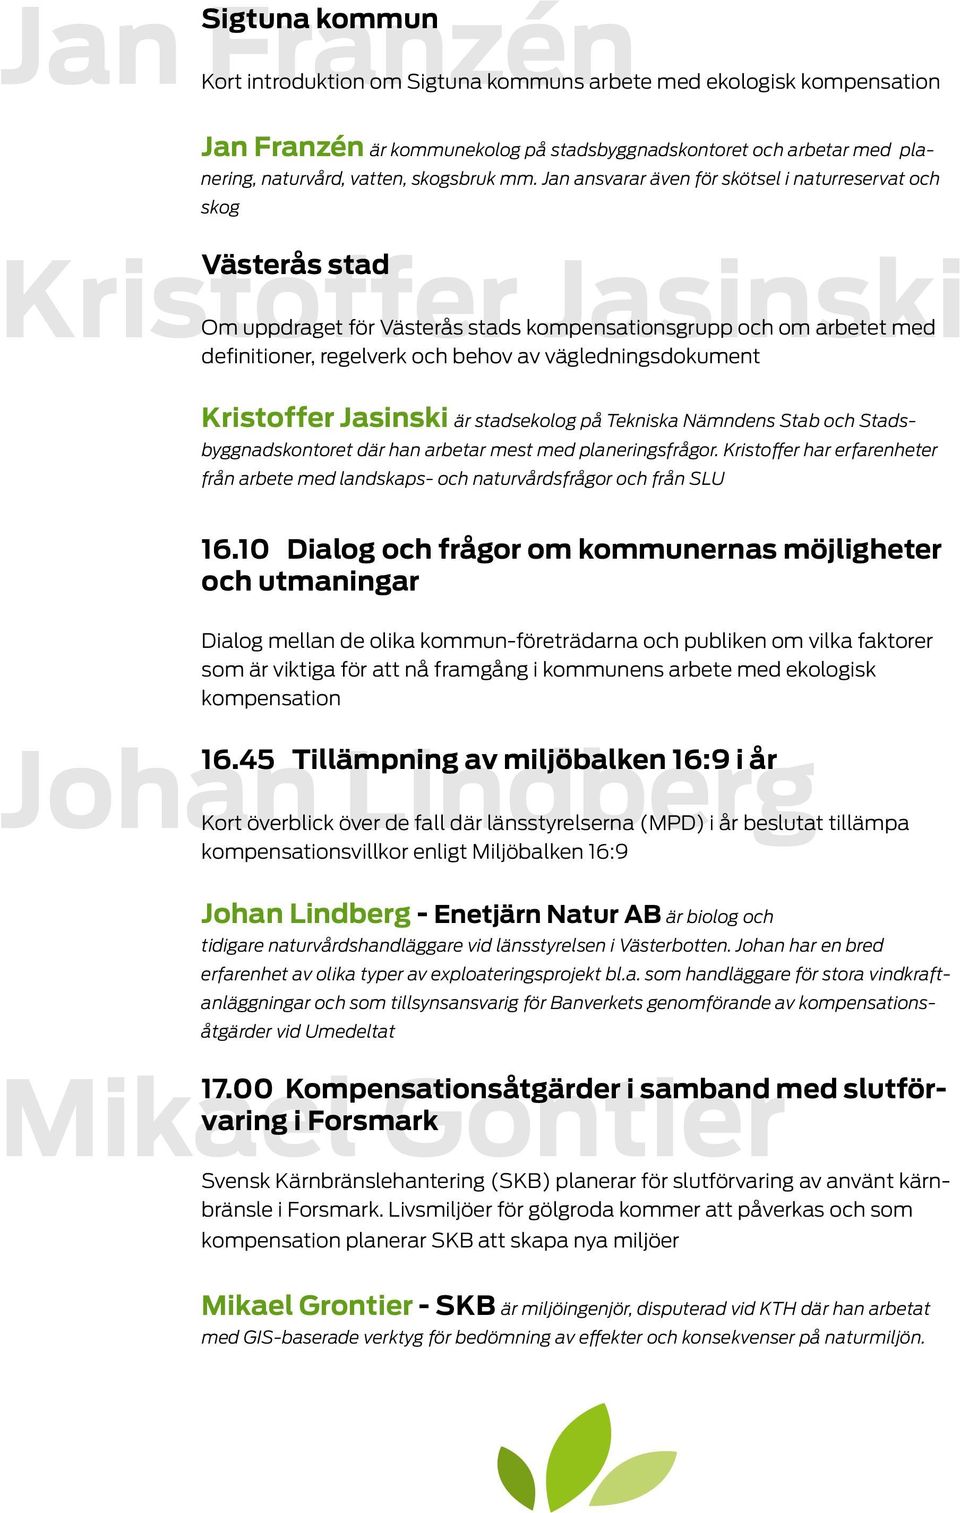 Jan ansvarar även för skötsel i naturreservat och skog Kristoffer Västerås stad Jasinski Om uppdraget för Västerås stads kompensationsgrupp och om arbetet med definitioner, regelverk och behov av